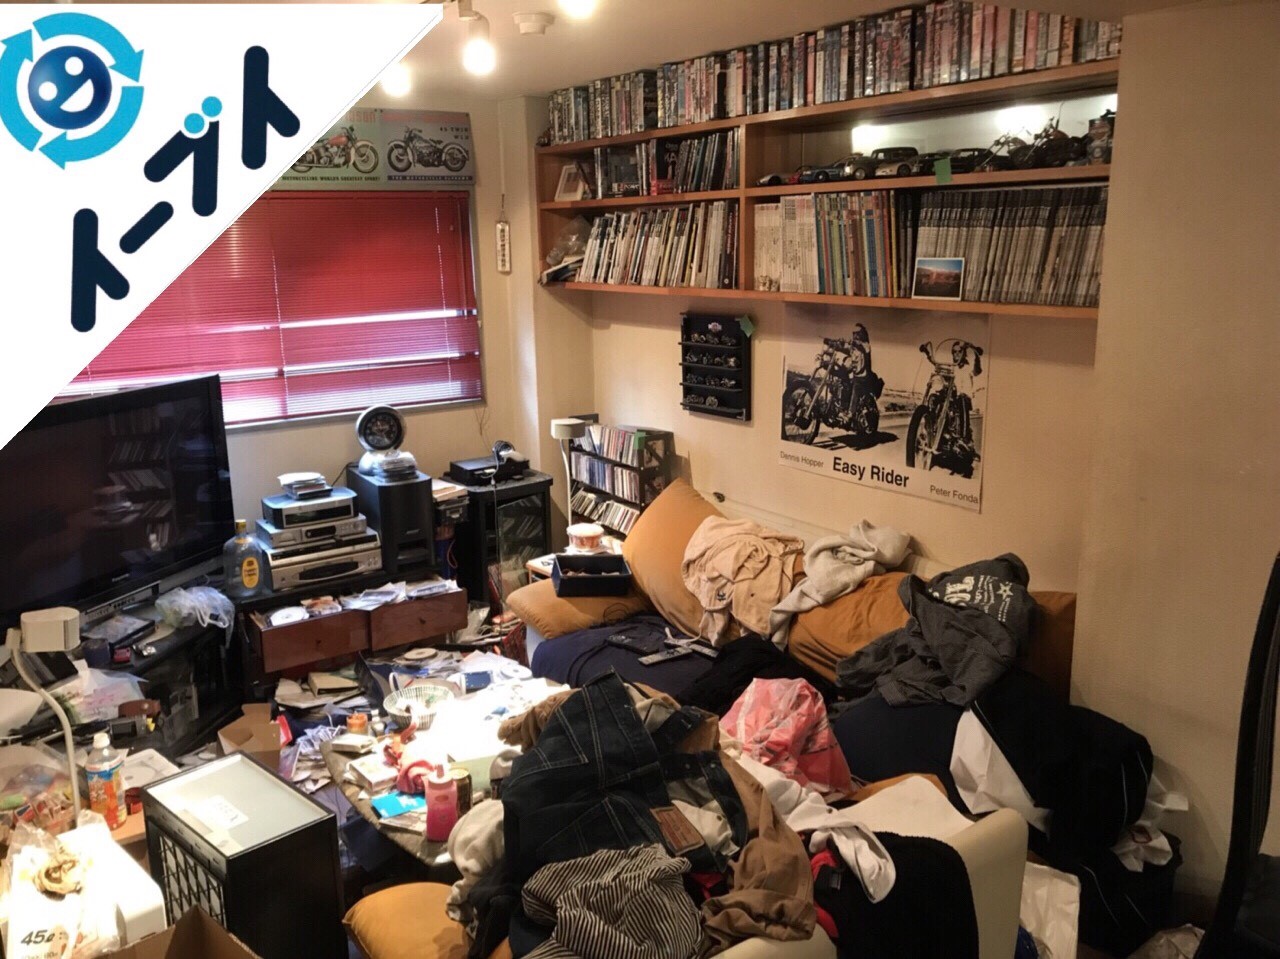 2018年5月11日大阪府八尾市で生活用品で溢れた汚部屋化したゴミ屋敷の片付け。写真3